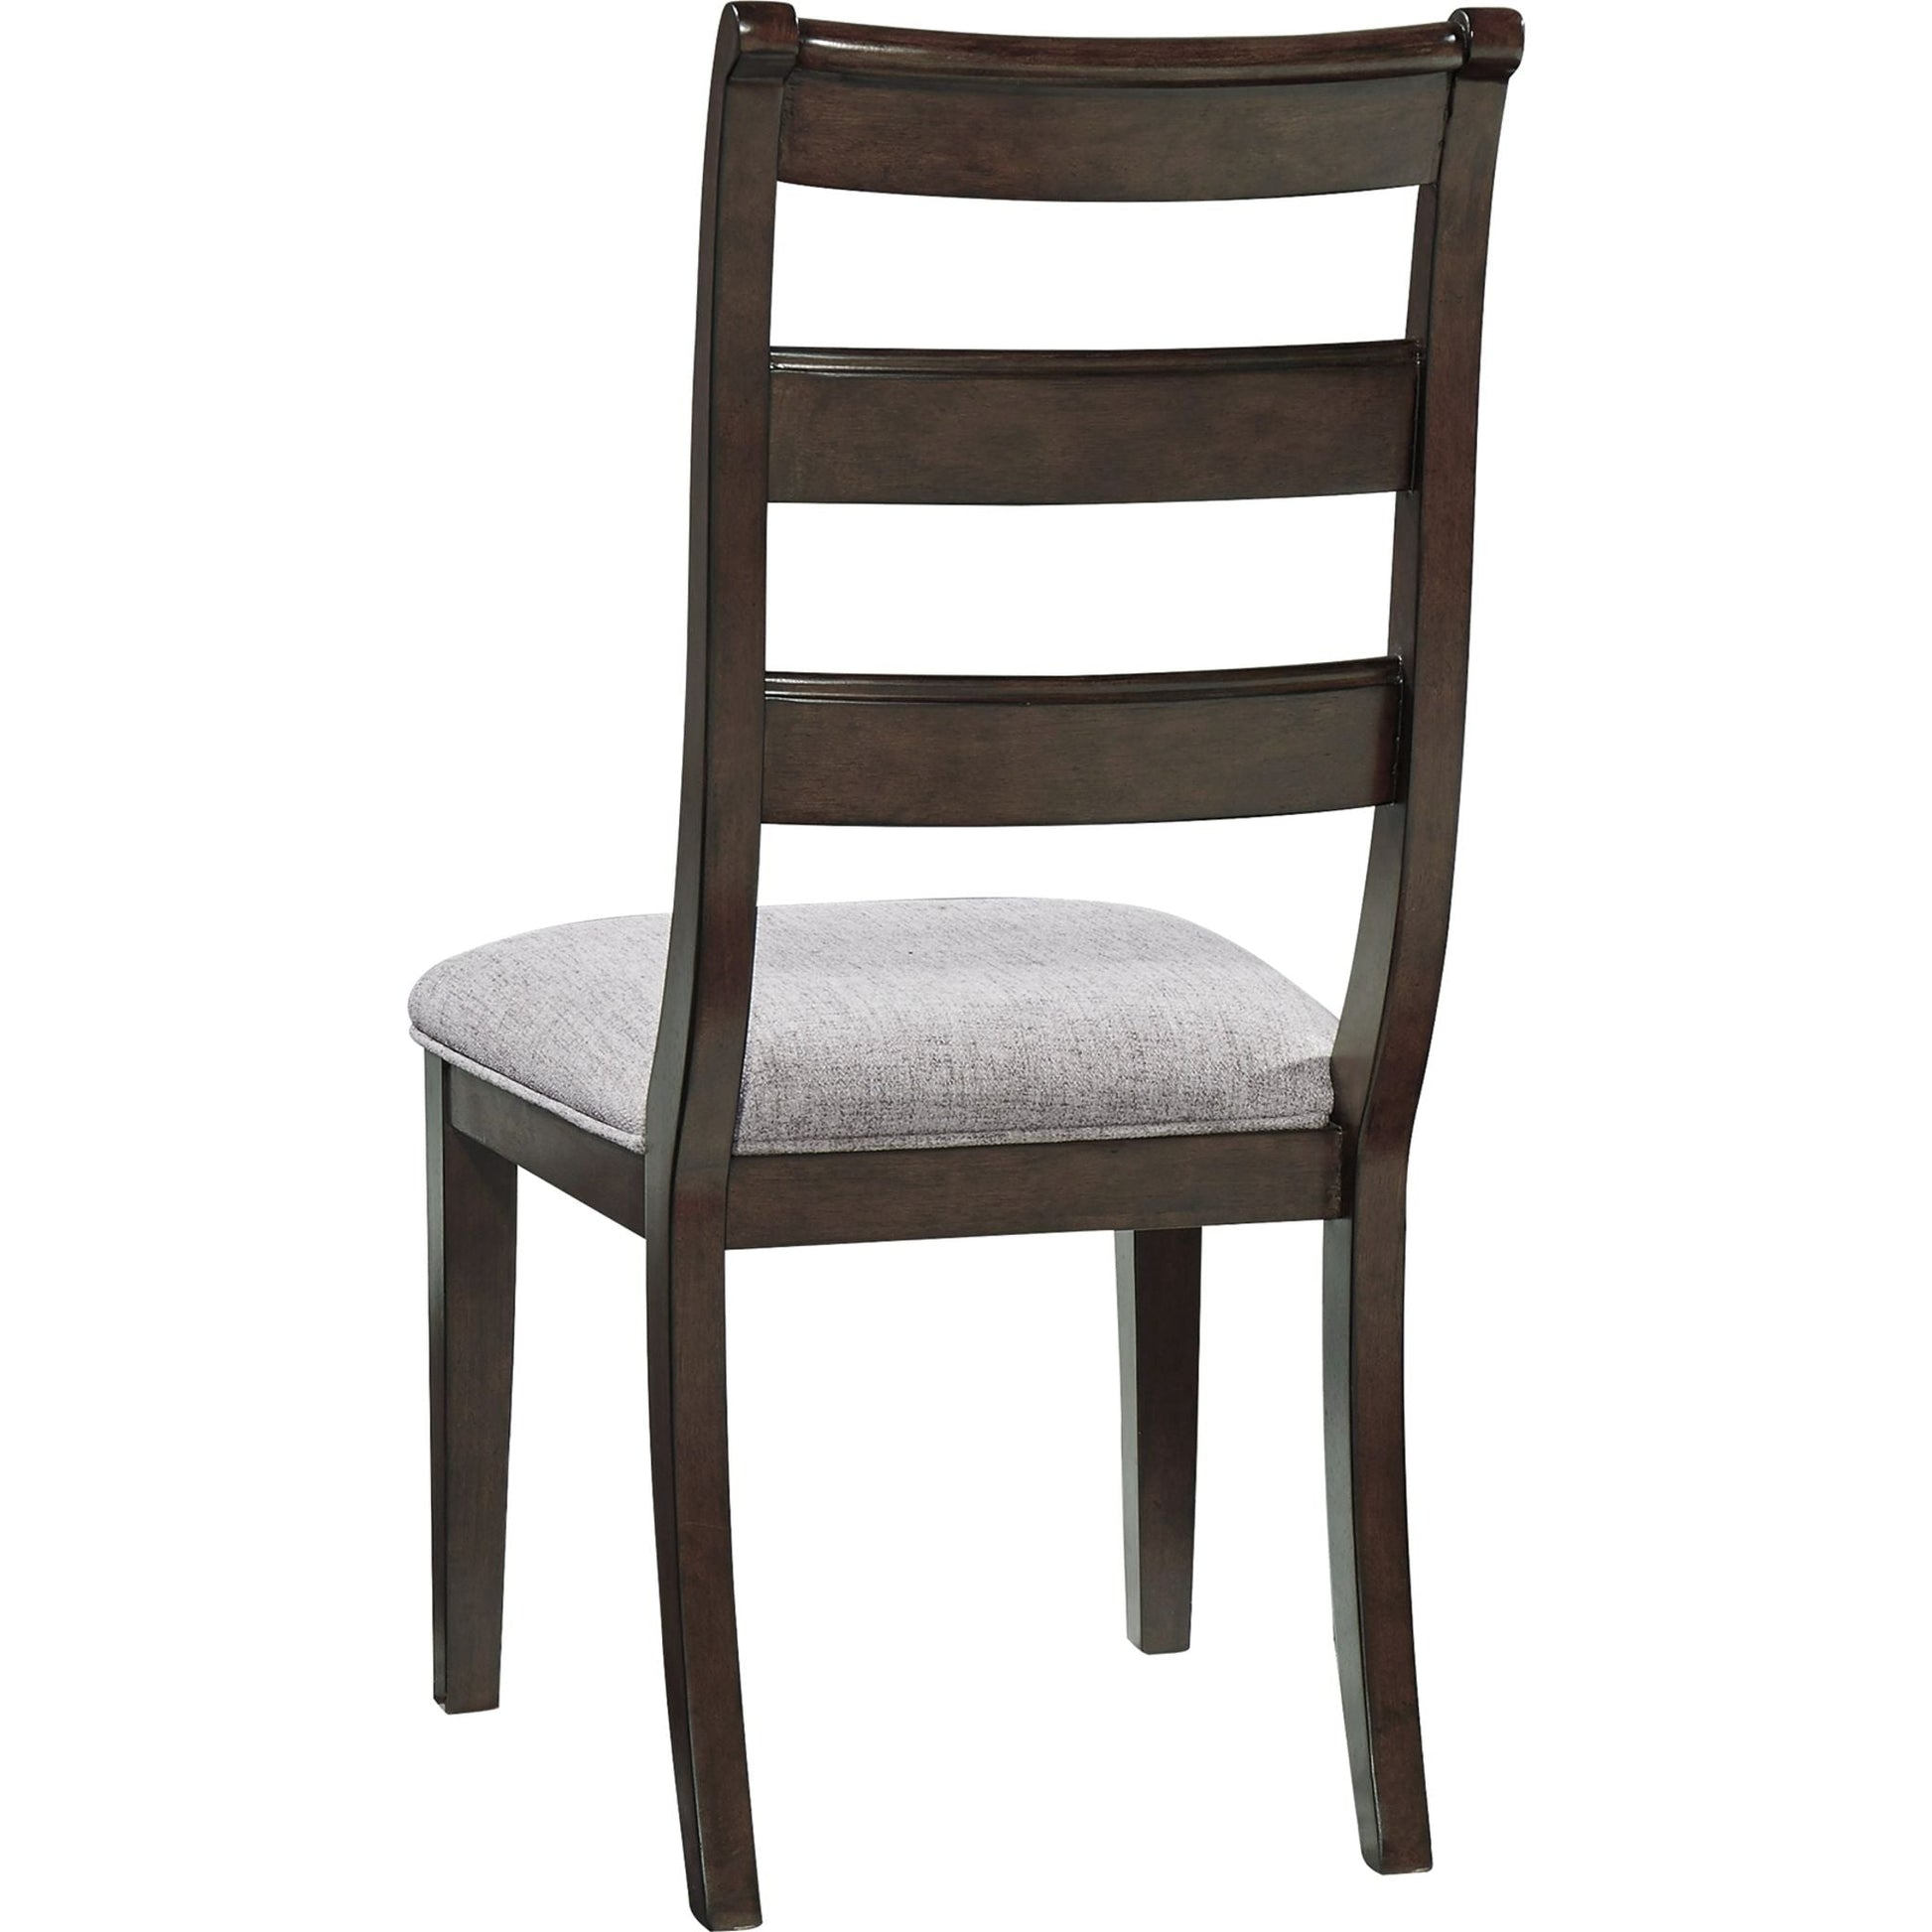 Hilmoore Side Chair - Reddish Brown - (D677-01)